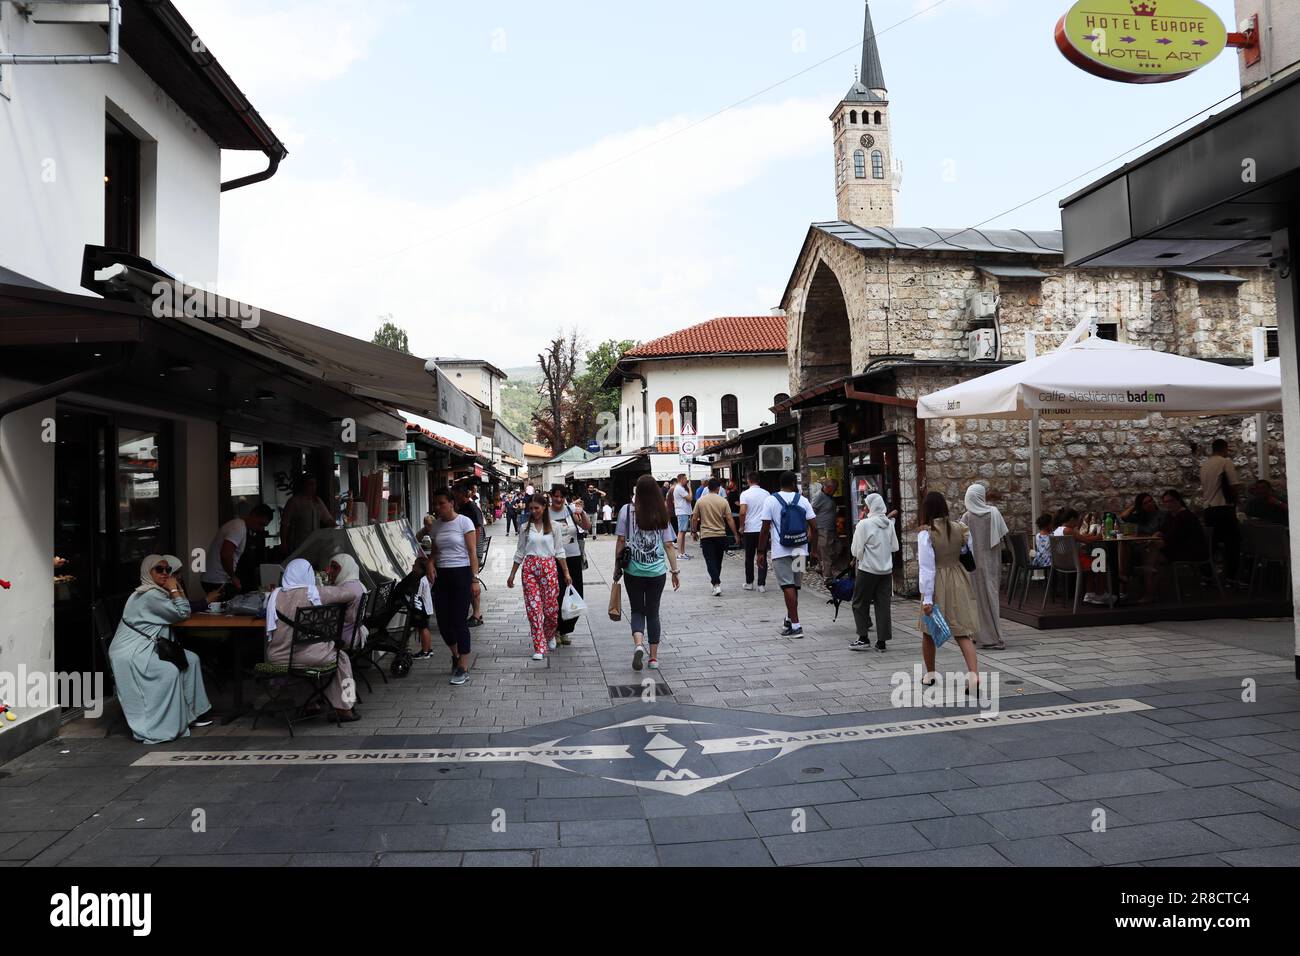 Die Schönheit der Stadt Sarajevo und die Einflüsse unterschiedlicher Kulturen spiegeln sich in der Architektur der Stadt wider. Stockfoto